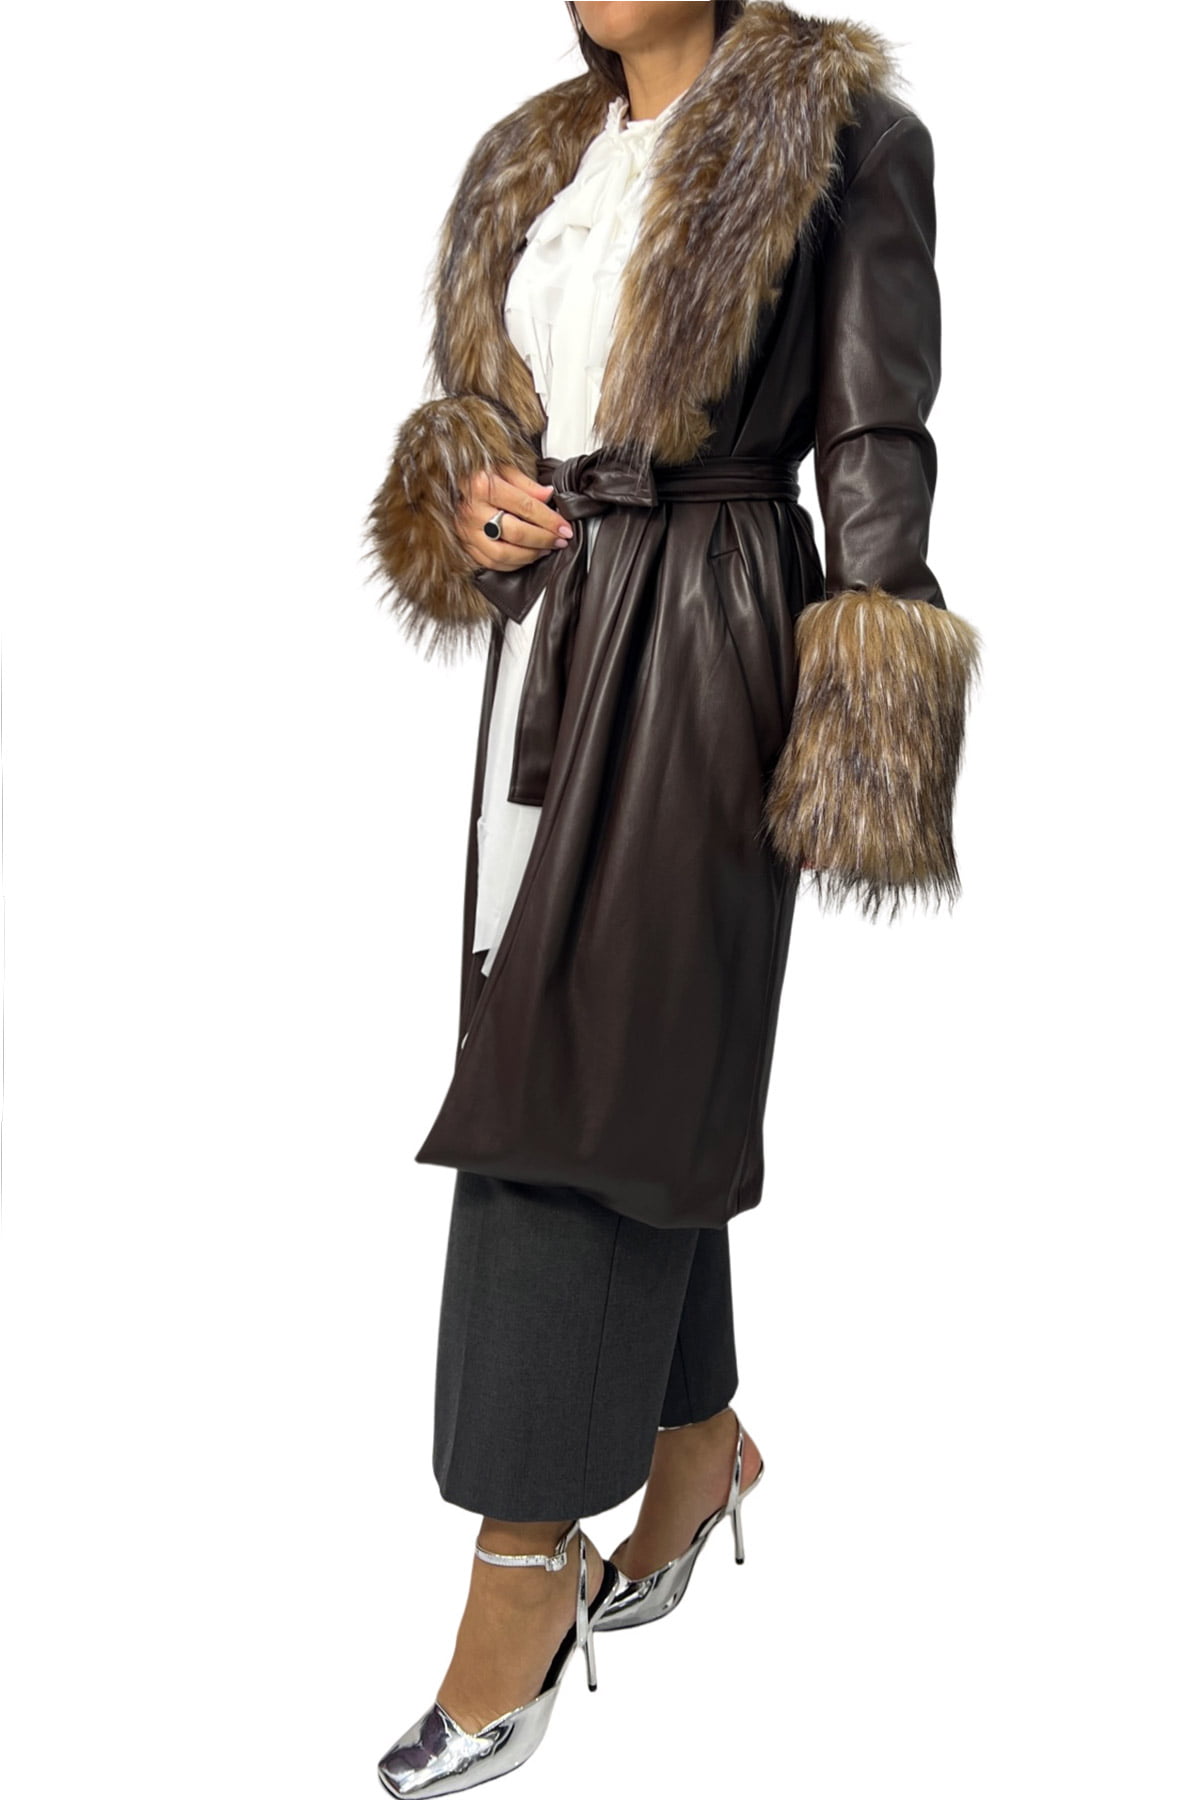 Cappotto donna midi in ecopelle con dettaglio collo e polsi in eco pelliccia pelo lungo